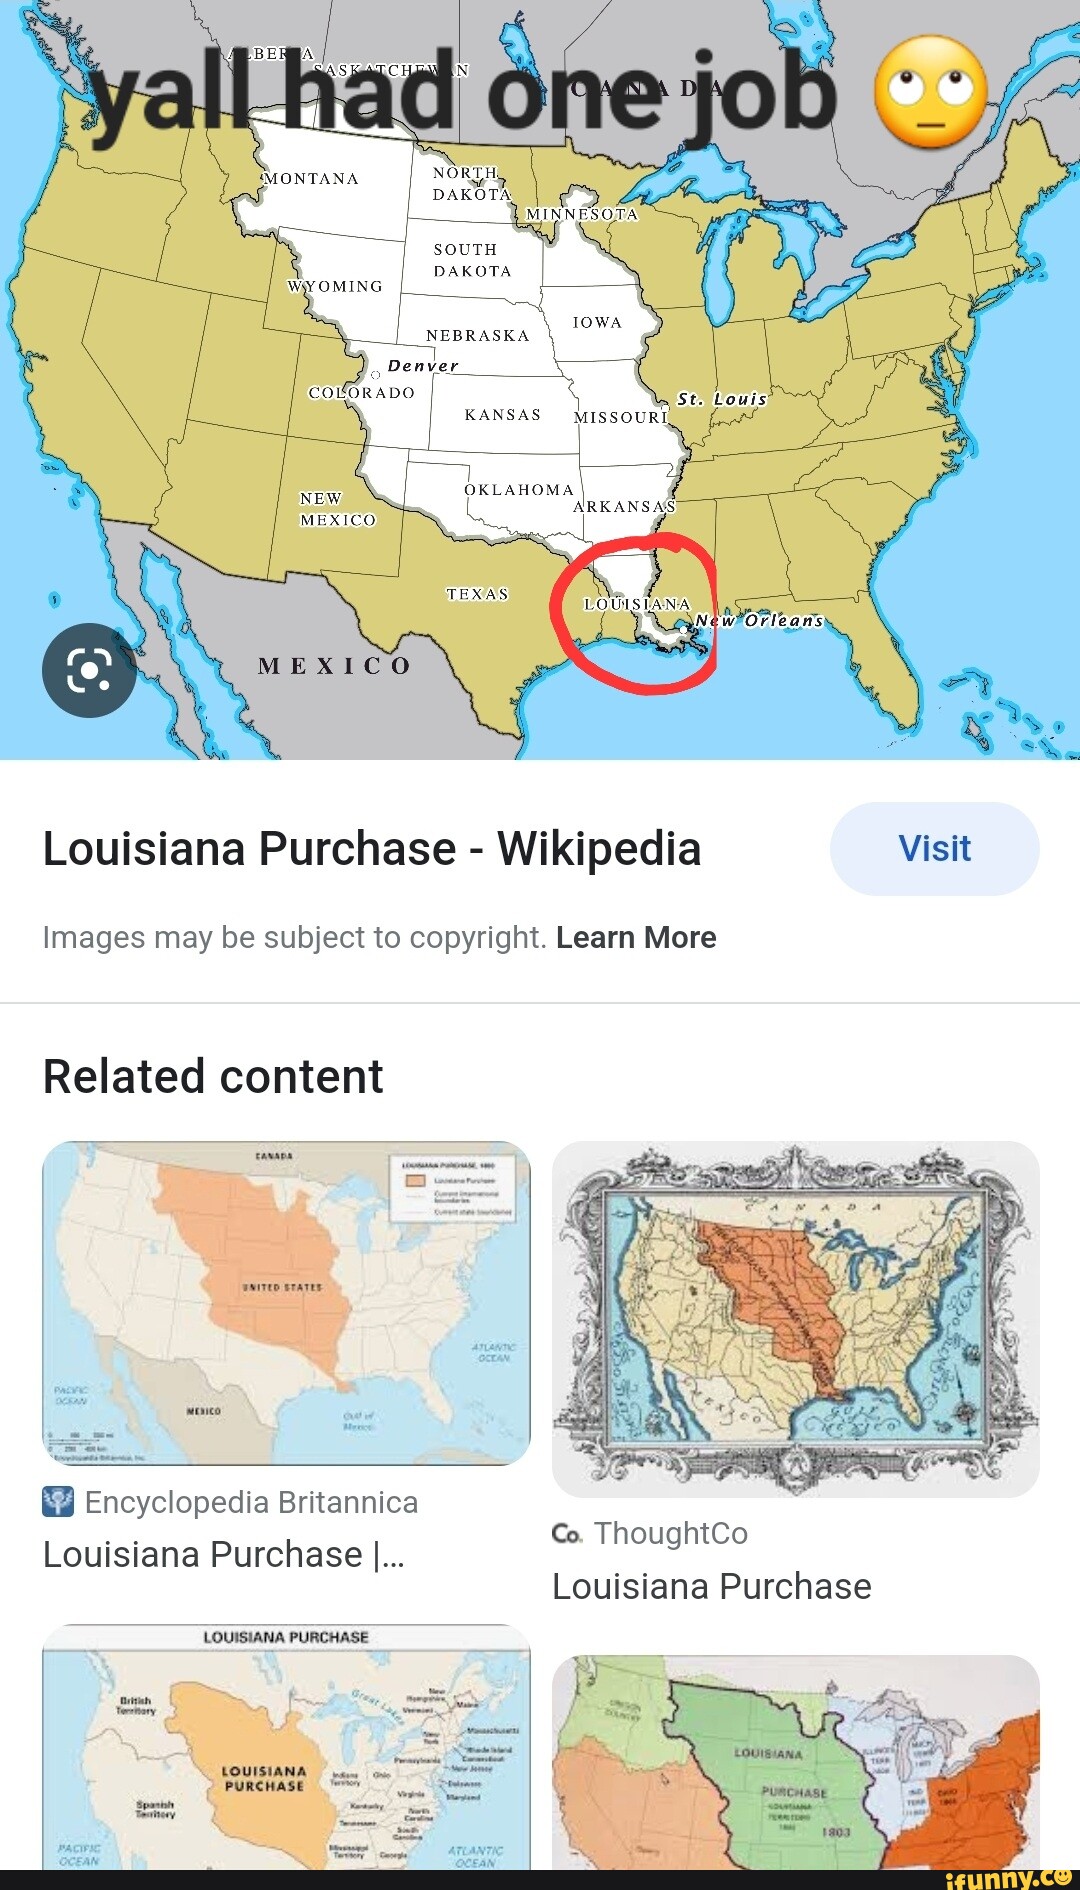 Louisiana Purchase - Wikipedia